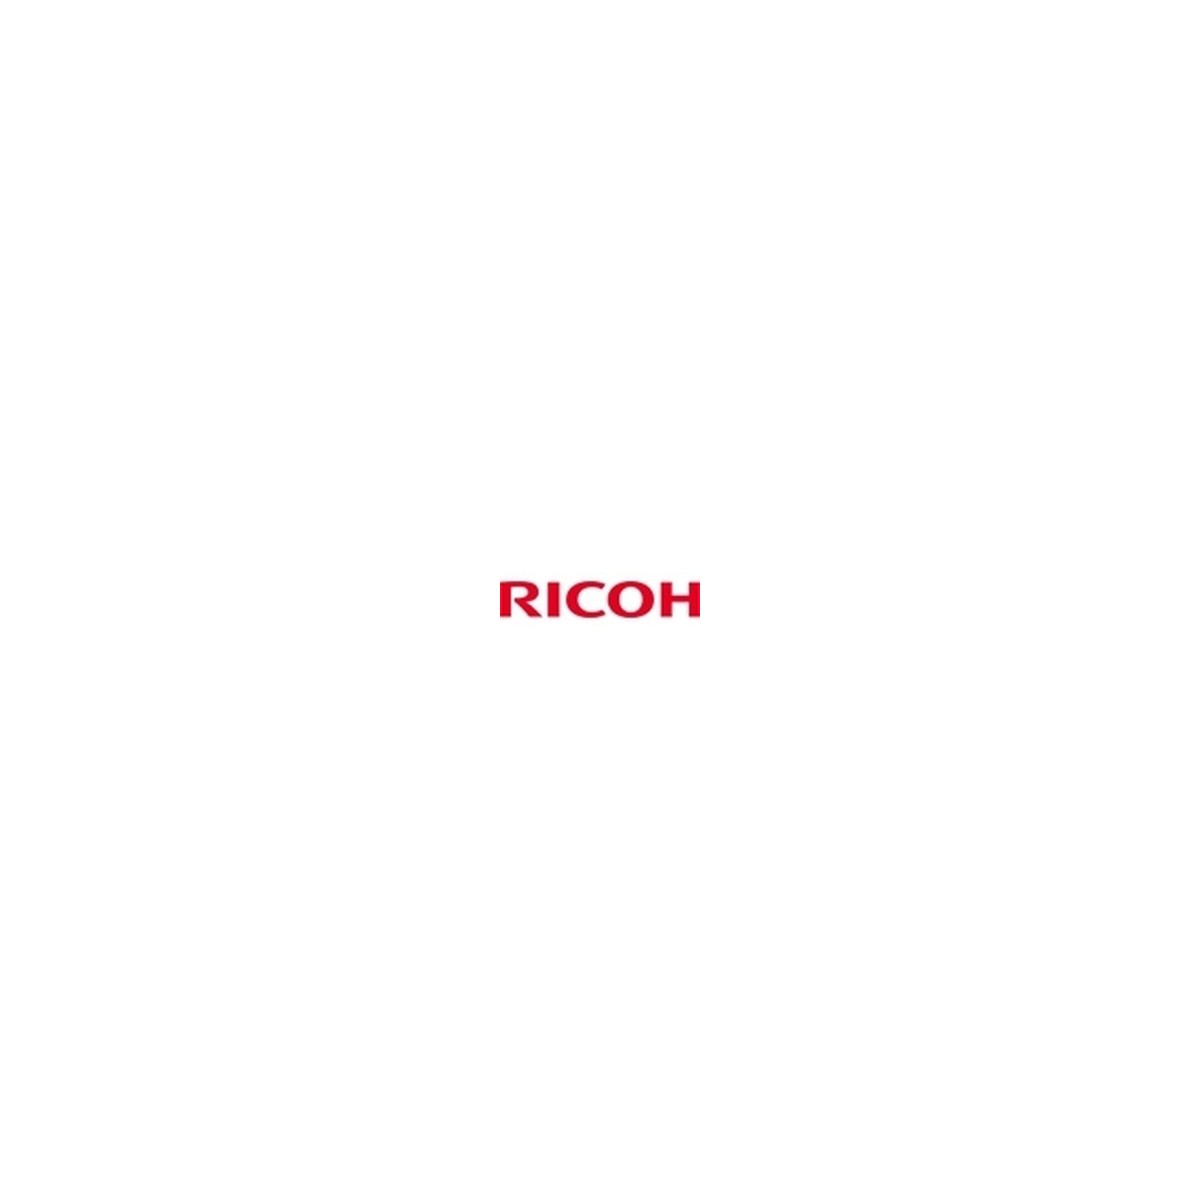 Ricoh HD Ink 1000cc Black - 3000 pages - Black